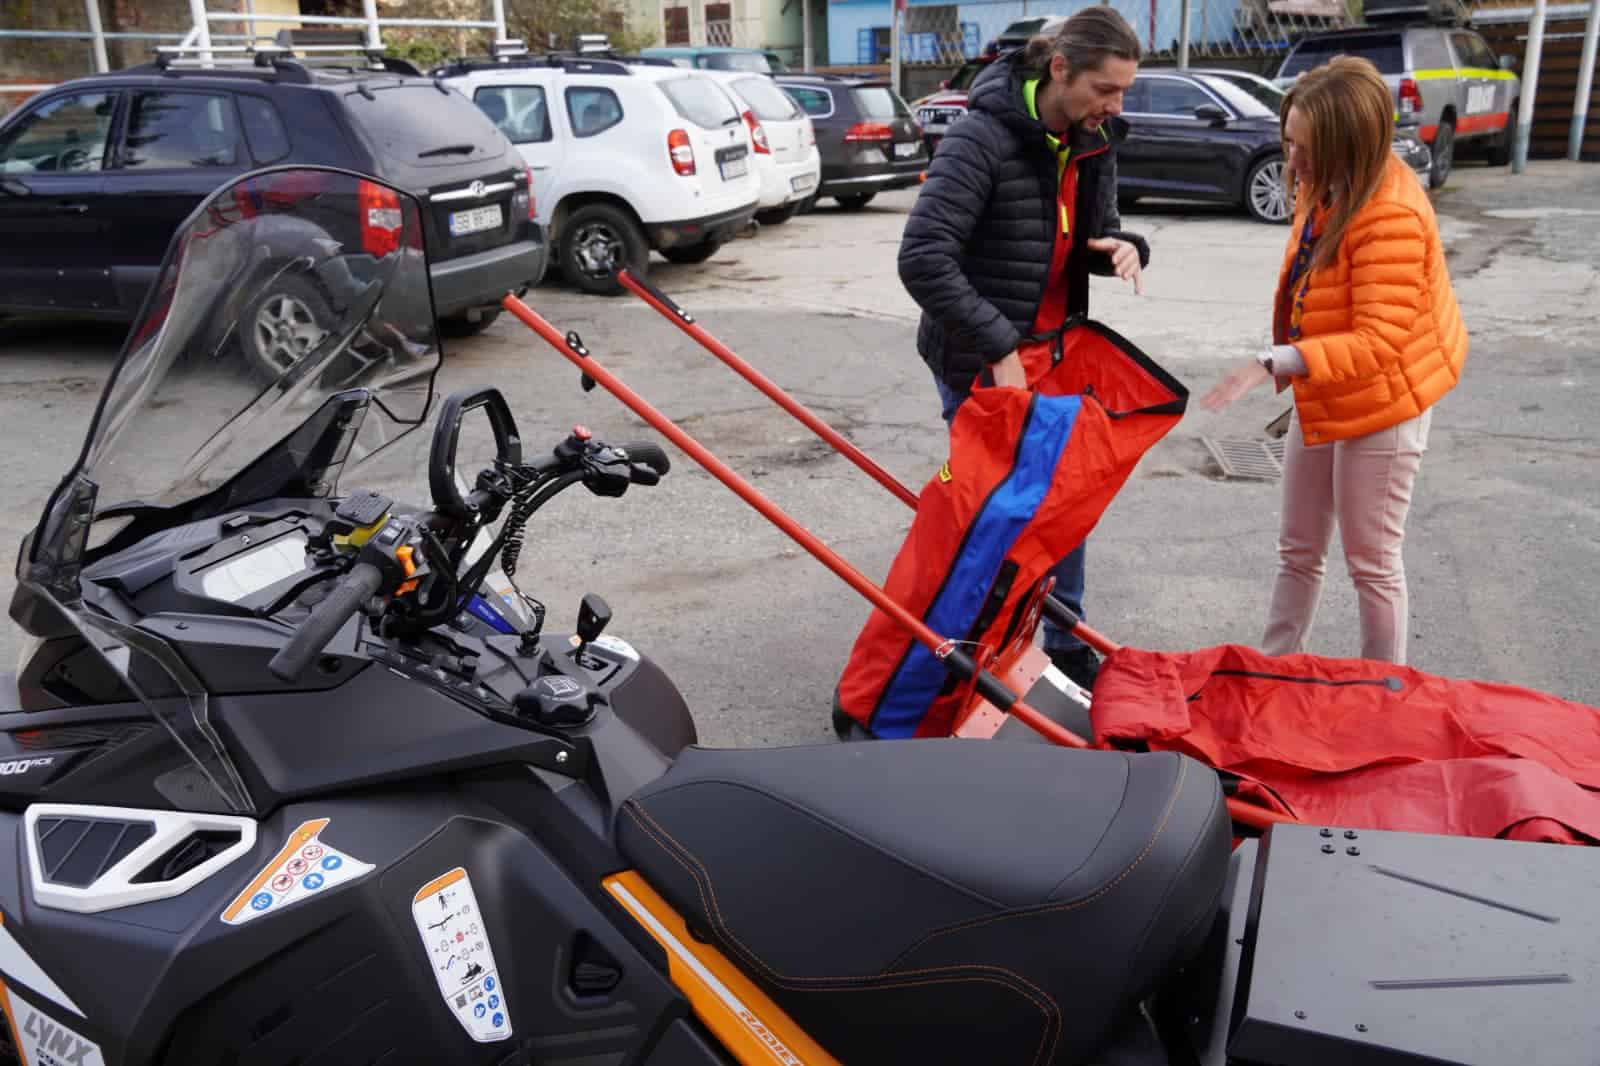 pregătiri de iarnă la salvamont sibiu. consiliul județean a cumpărat un snowmobil de ultimă generație